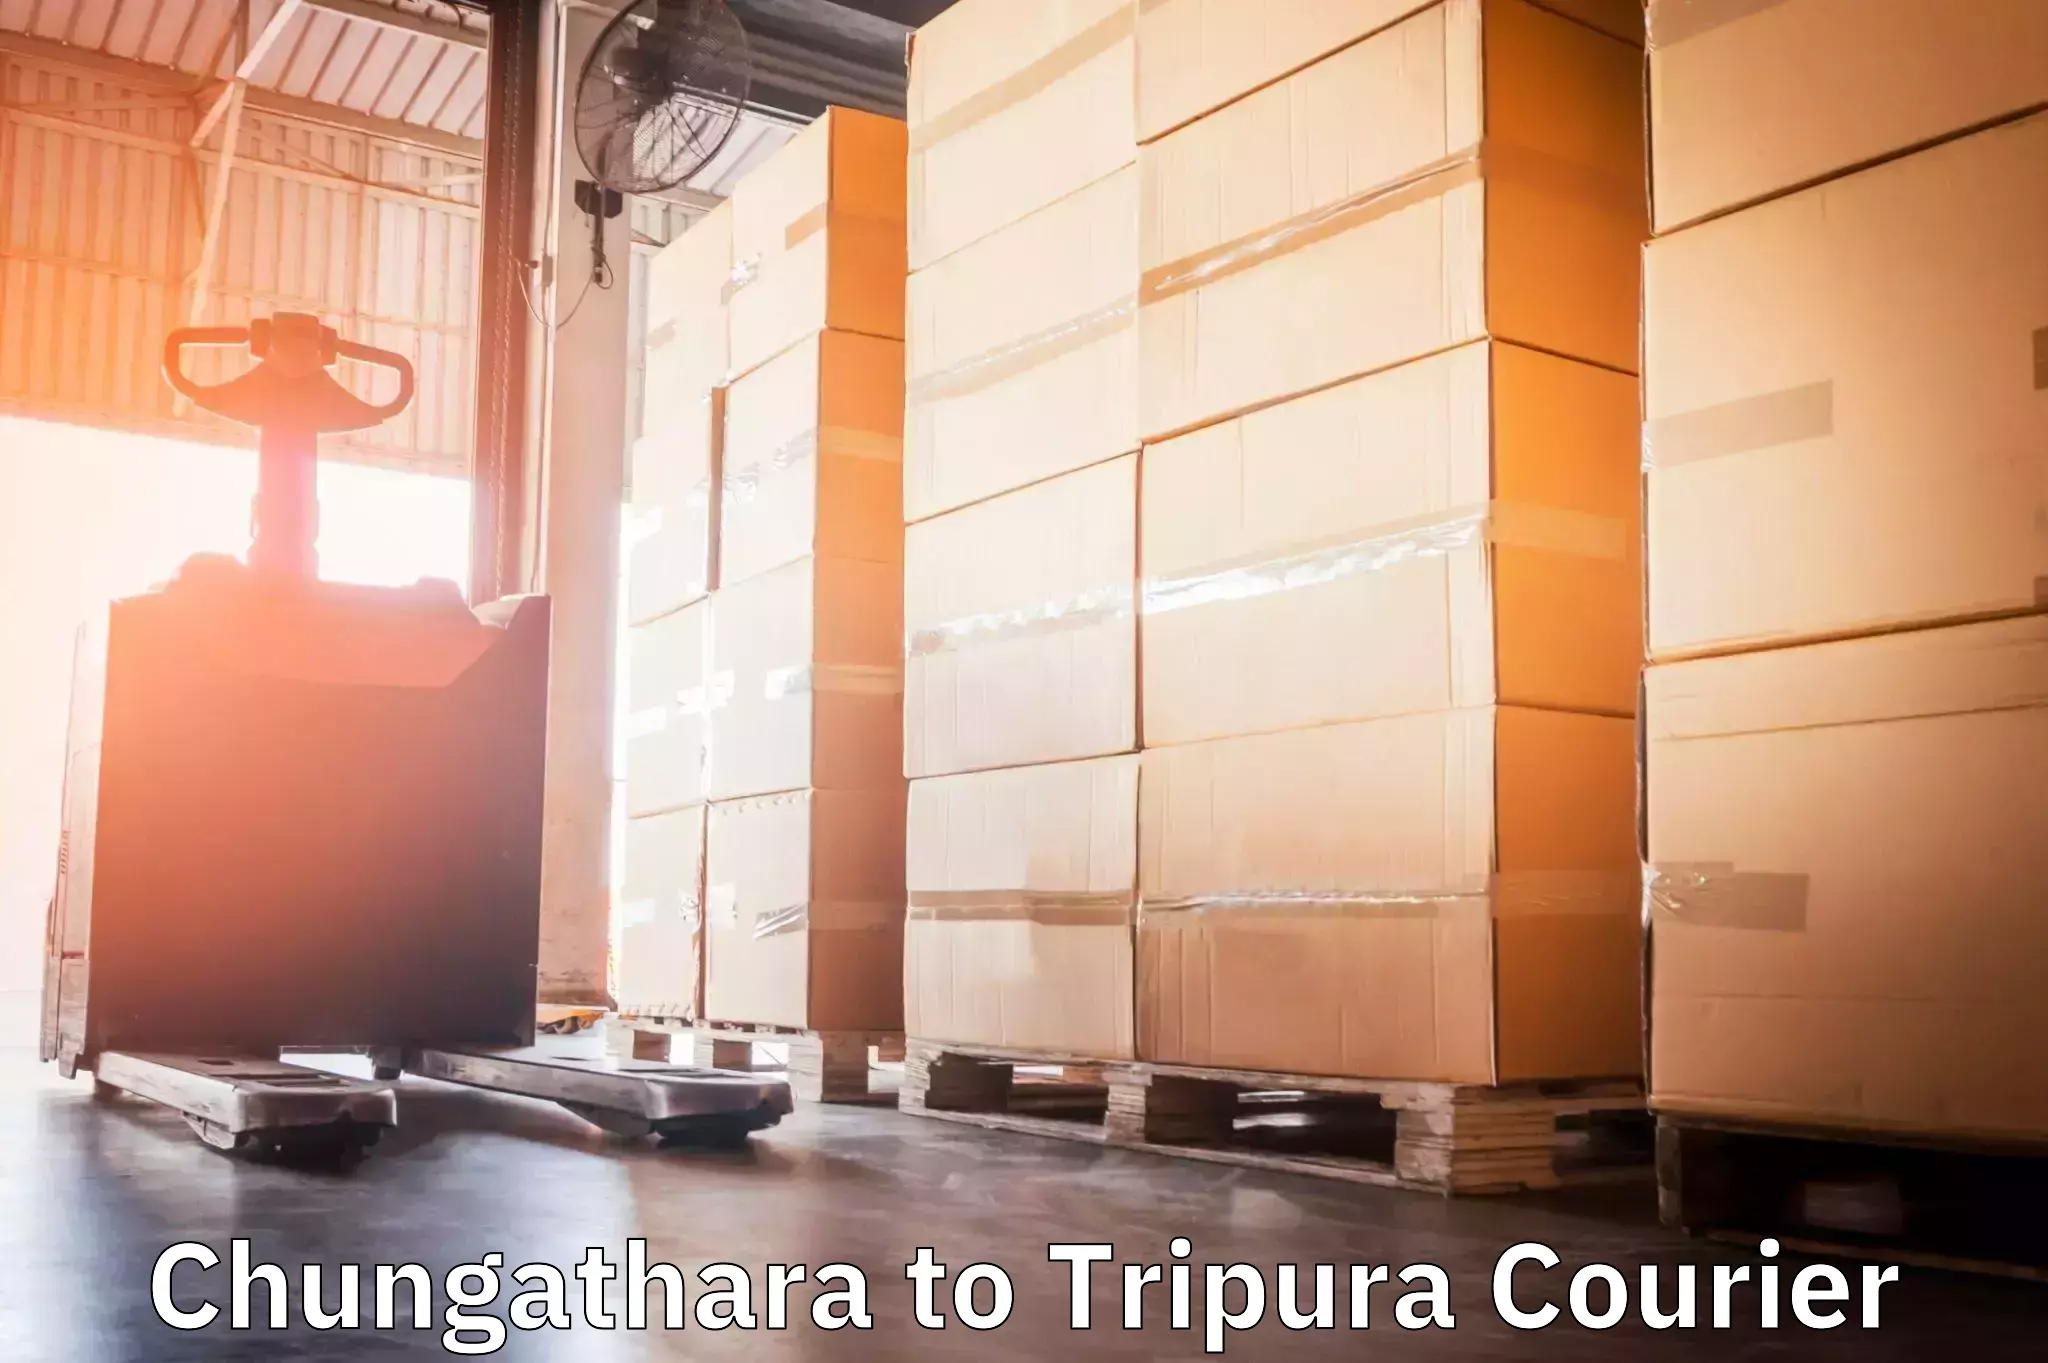 Bulk order courier Chungathara to Udaipur Tripura